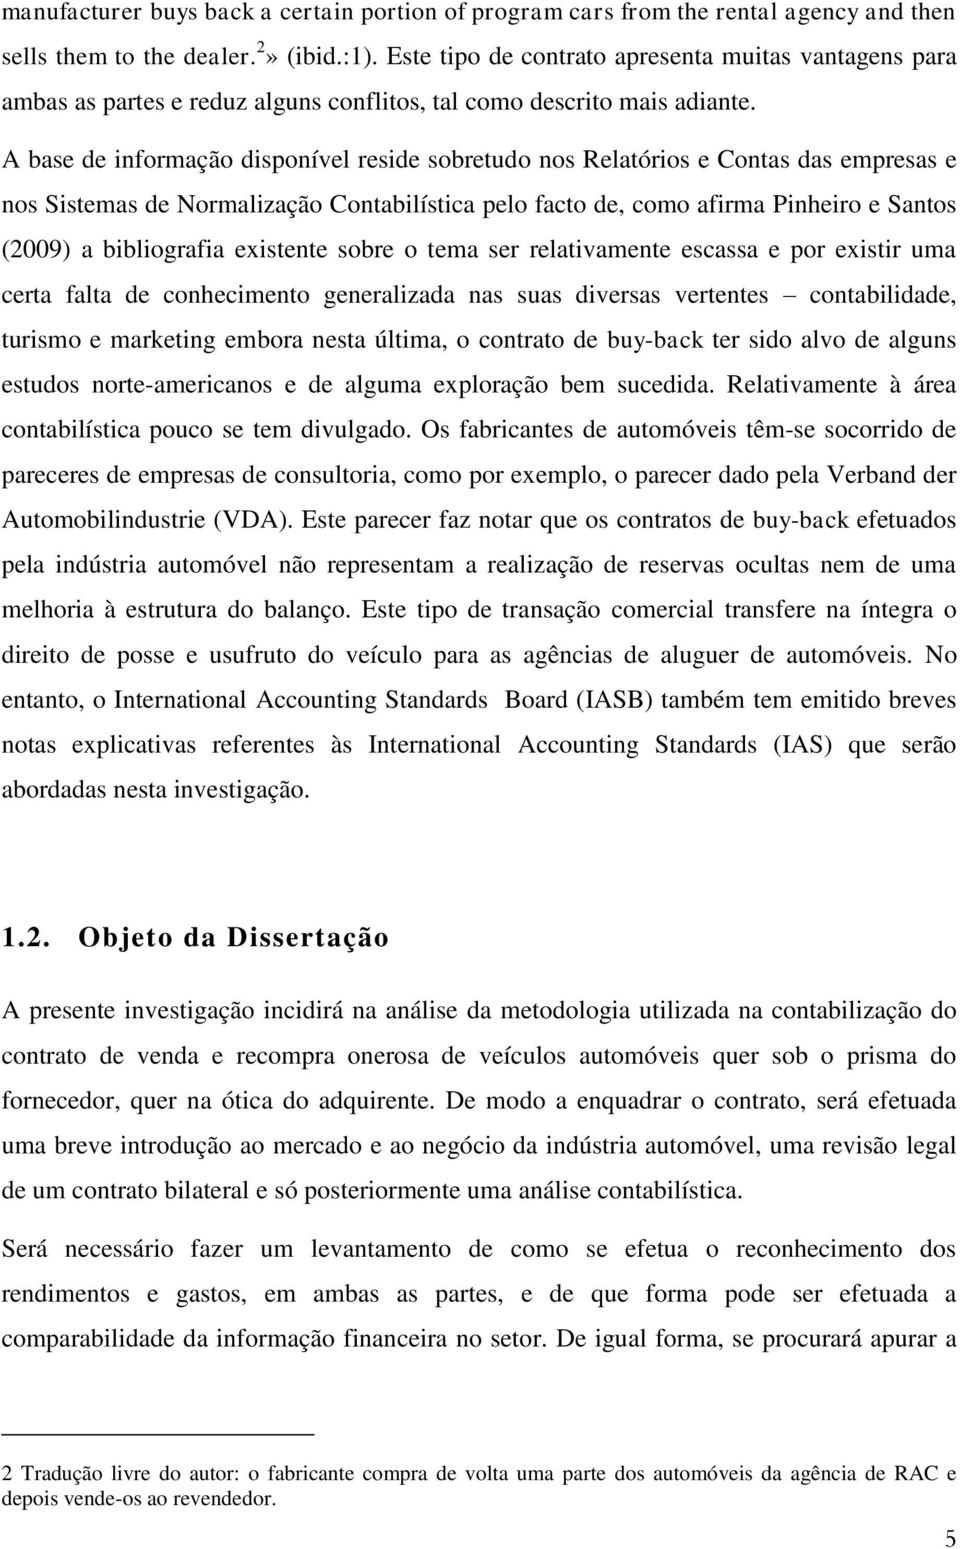 A base de informação disponível reside sobretudo nos Relatórios e Contas das empresas e nos Sistemas de Normalização Contabilística pelo facto de, como afirma Pinheiro e Santos (2009) a bibliografia